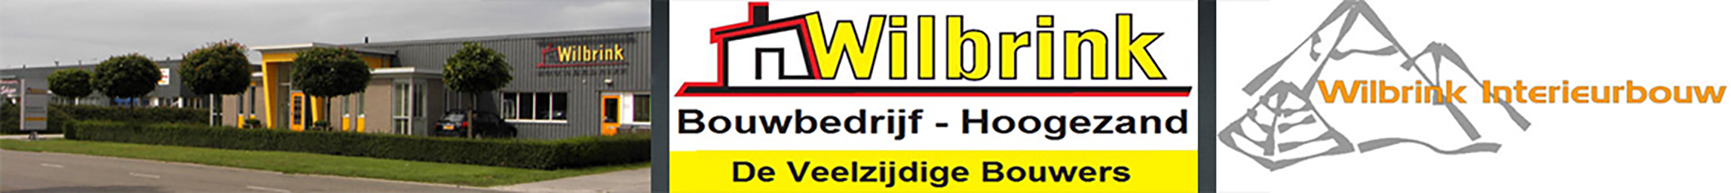 Wilbrink Logo